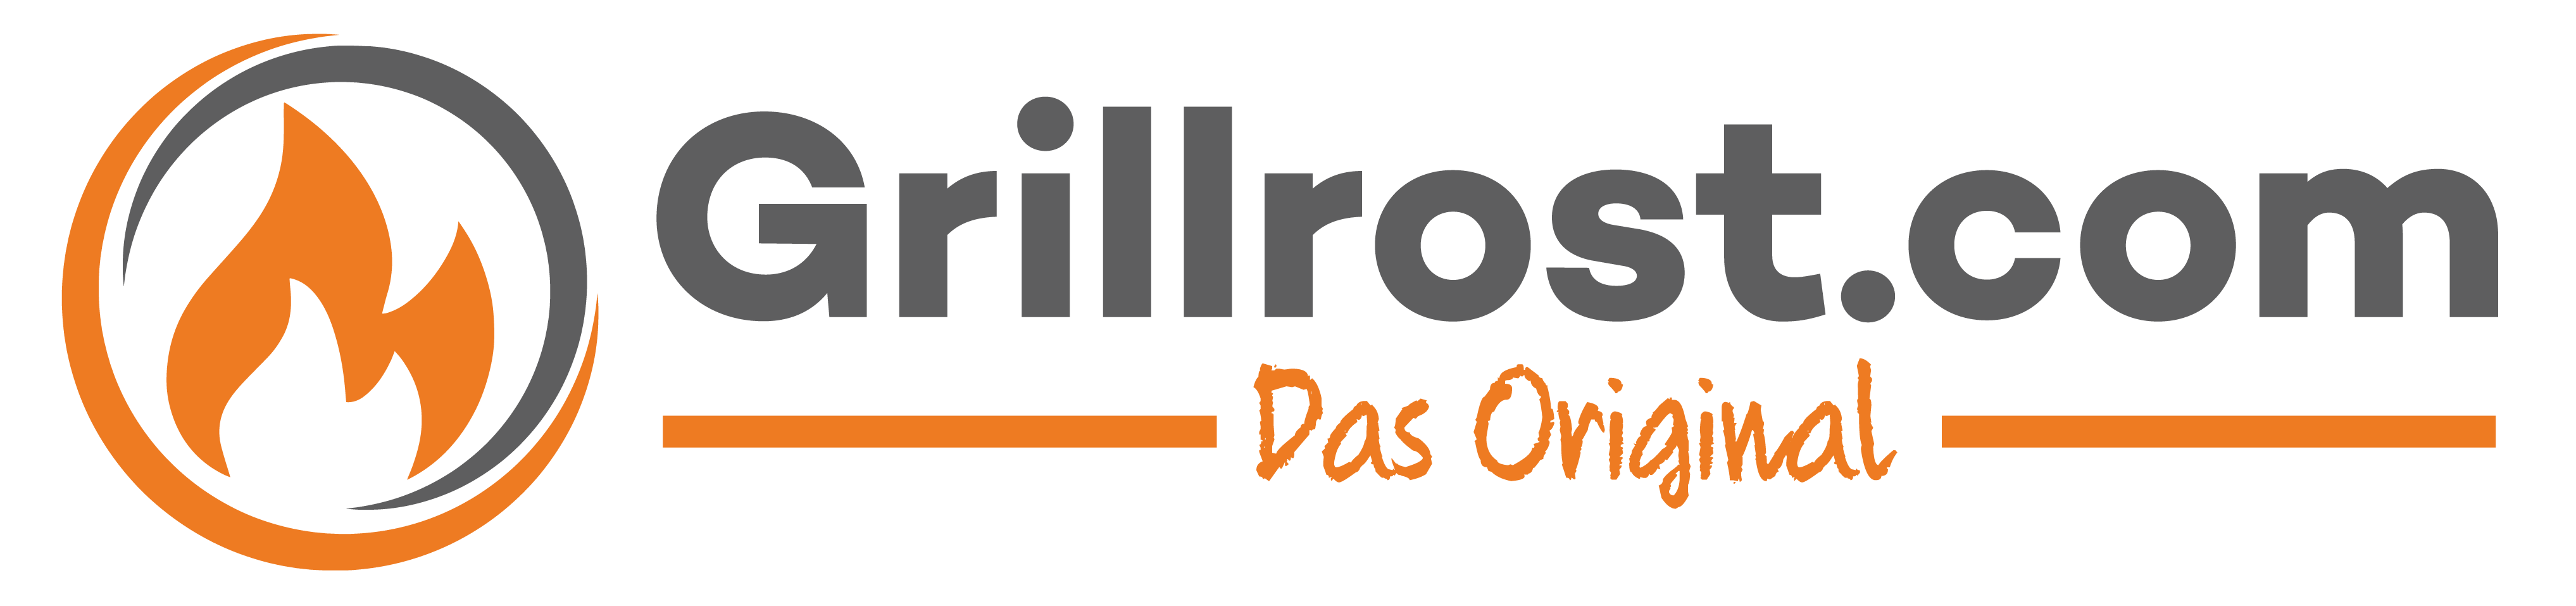 Grillrost.com Logo